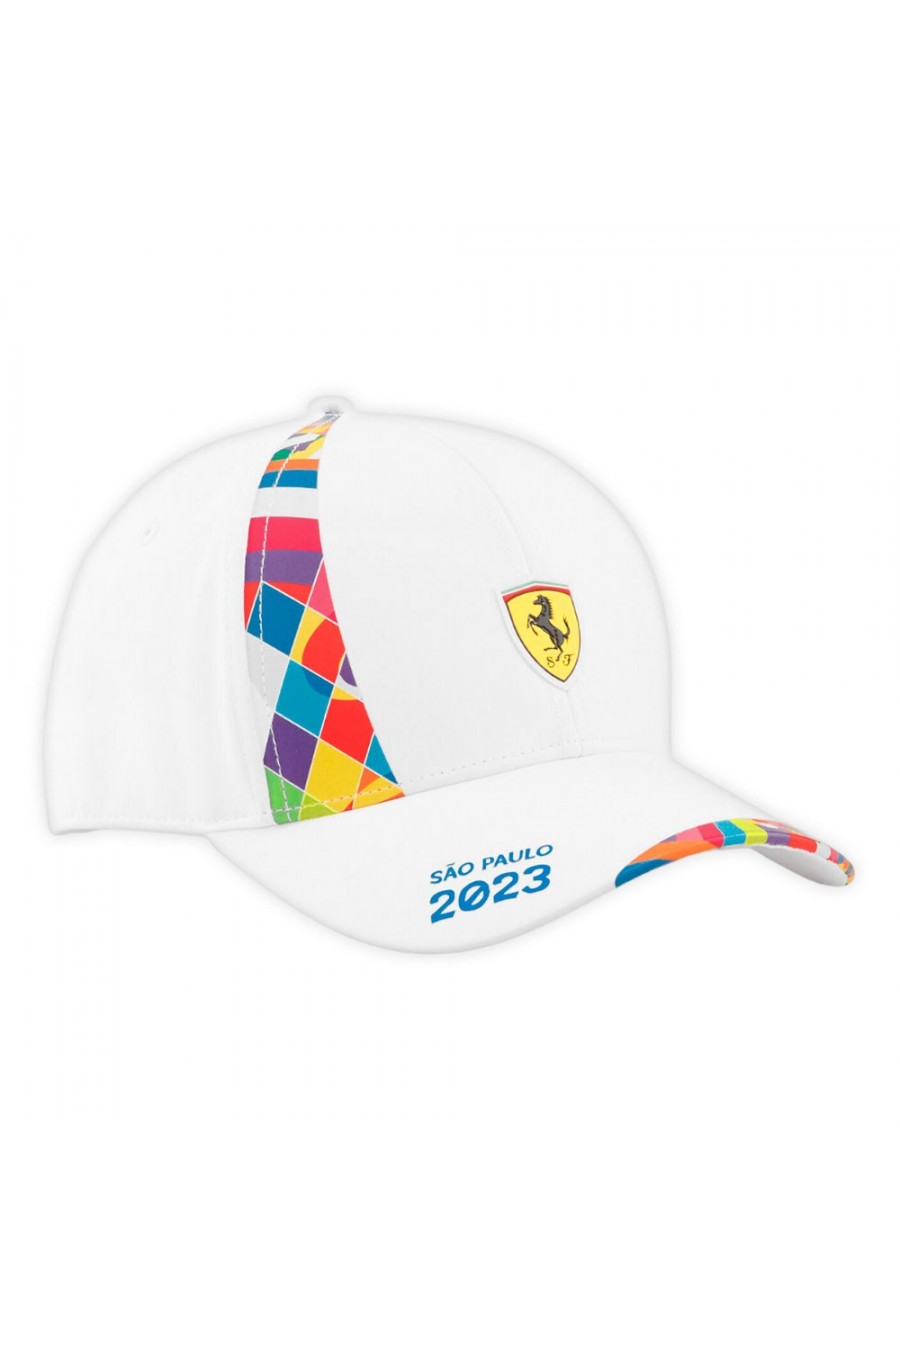 Acquista Cappellino Ferrari F1 GP Brasile. Disponibile in bianco, unisex